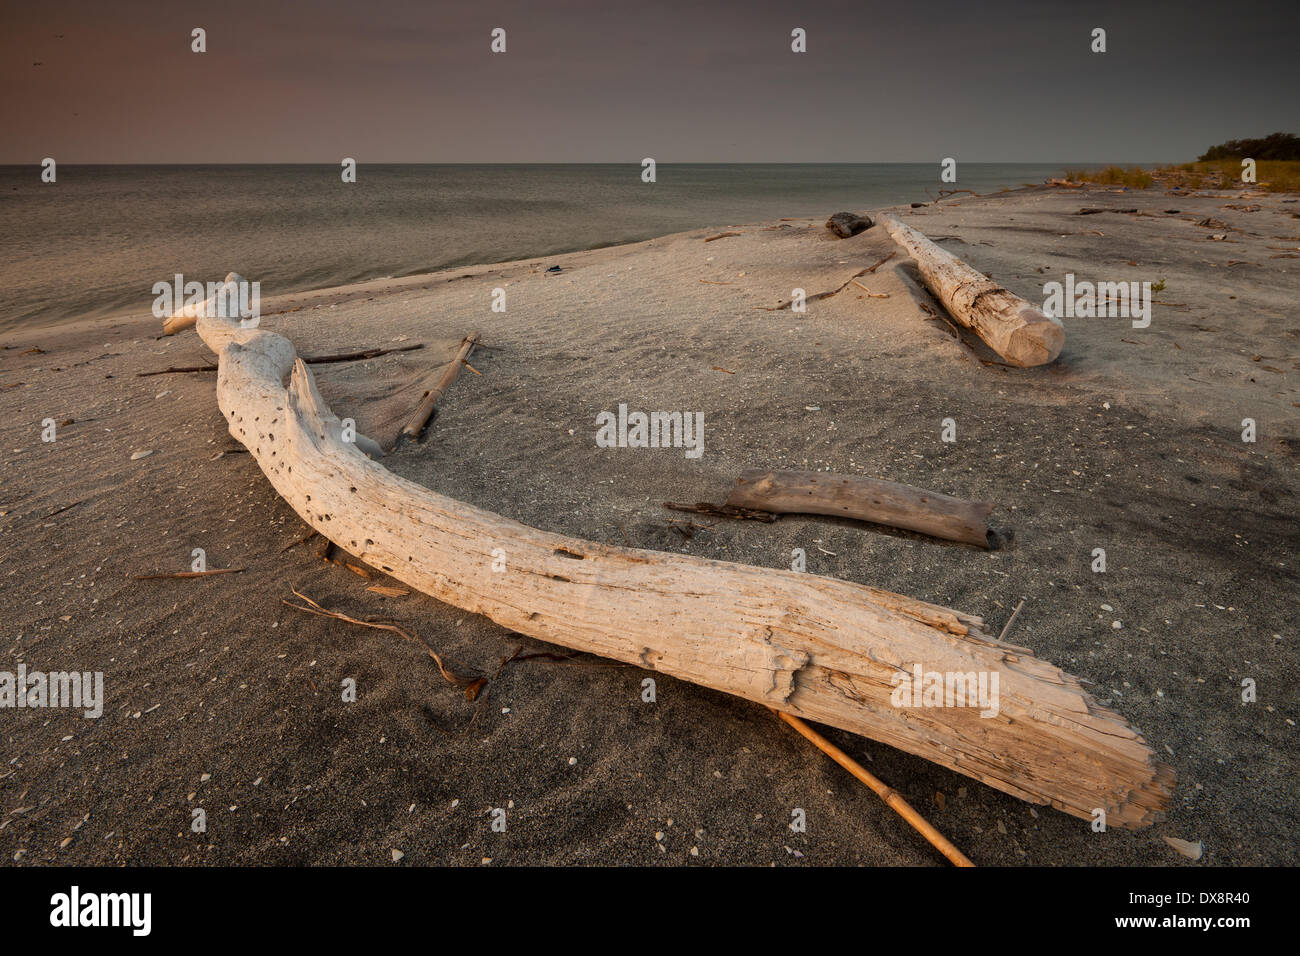 Treibholz am Sandstrand von Punta Chame an der Pazifischen Küste, Panama Provinz, Republik Panama. Stockfoto